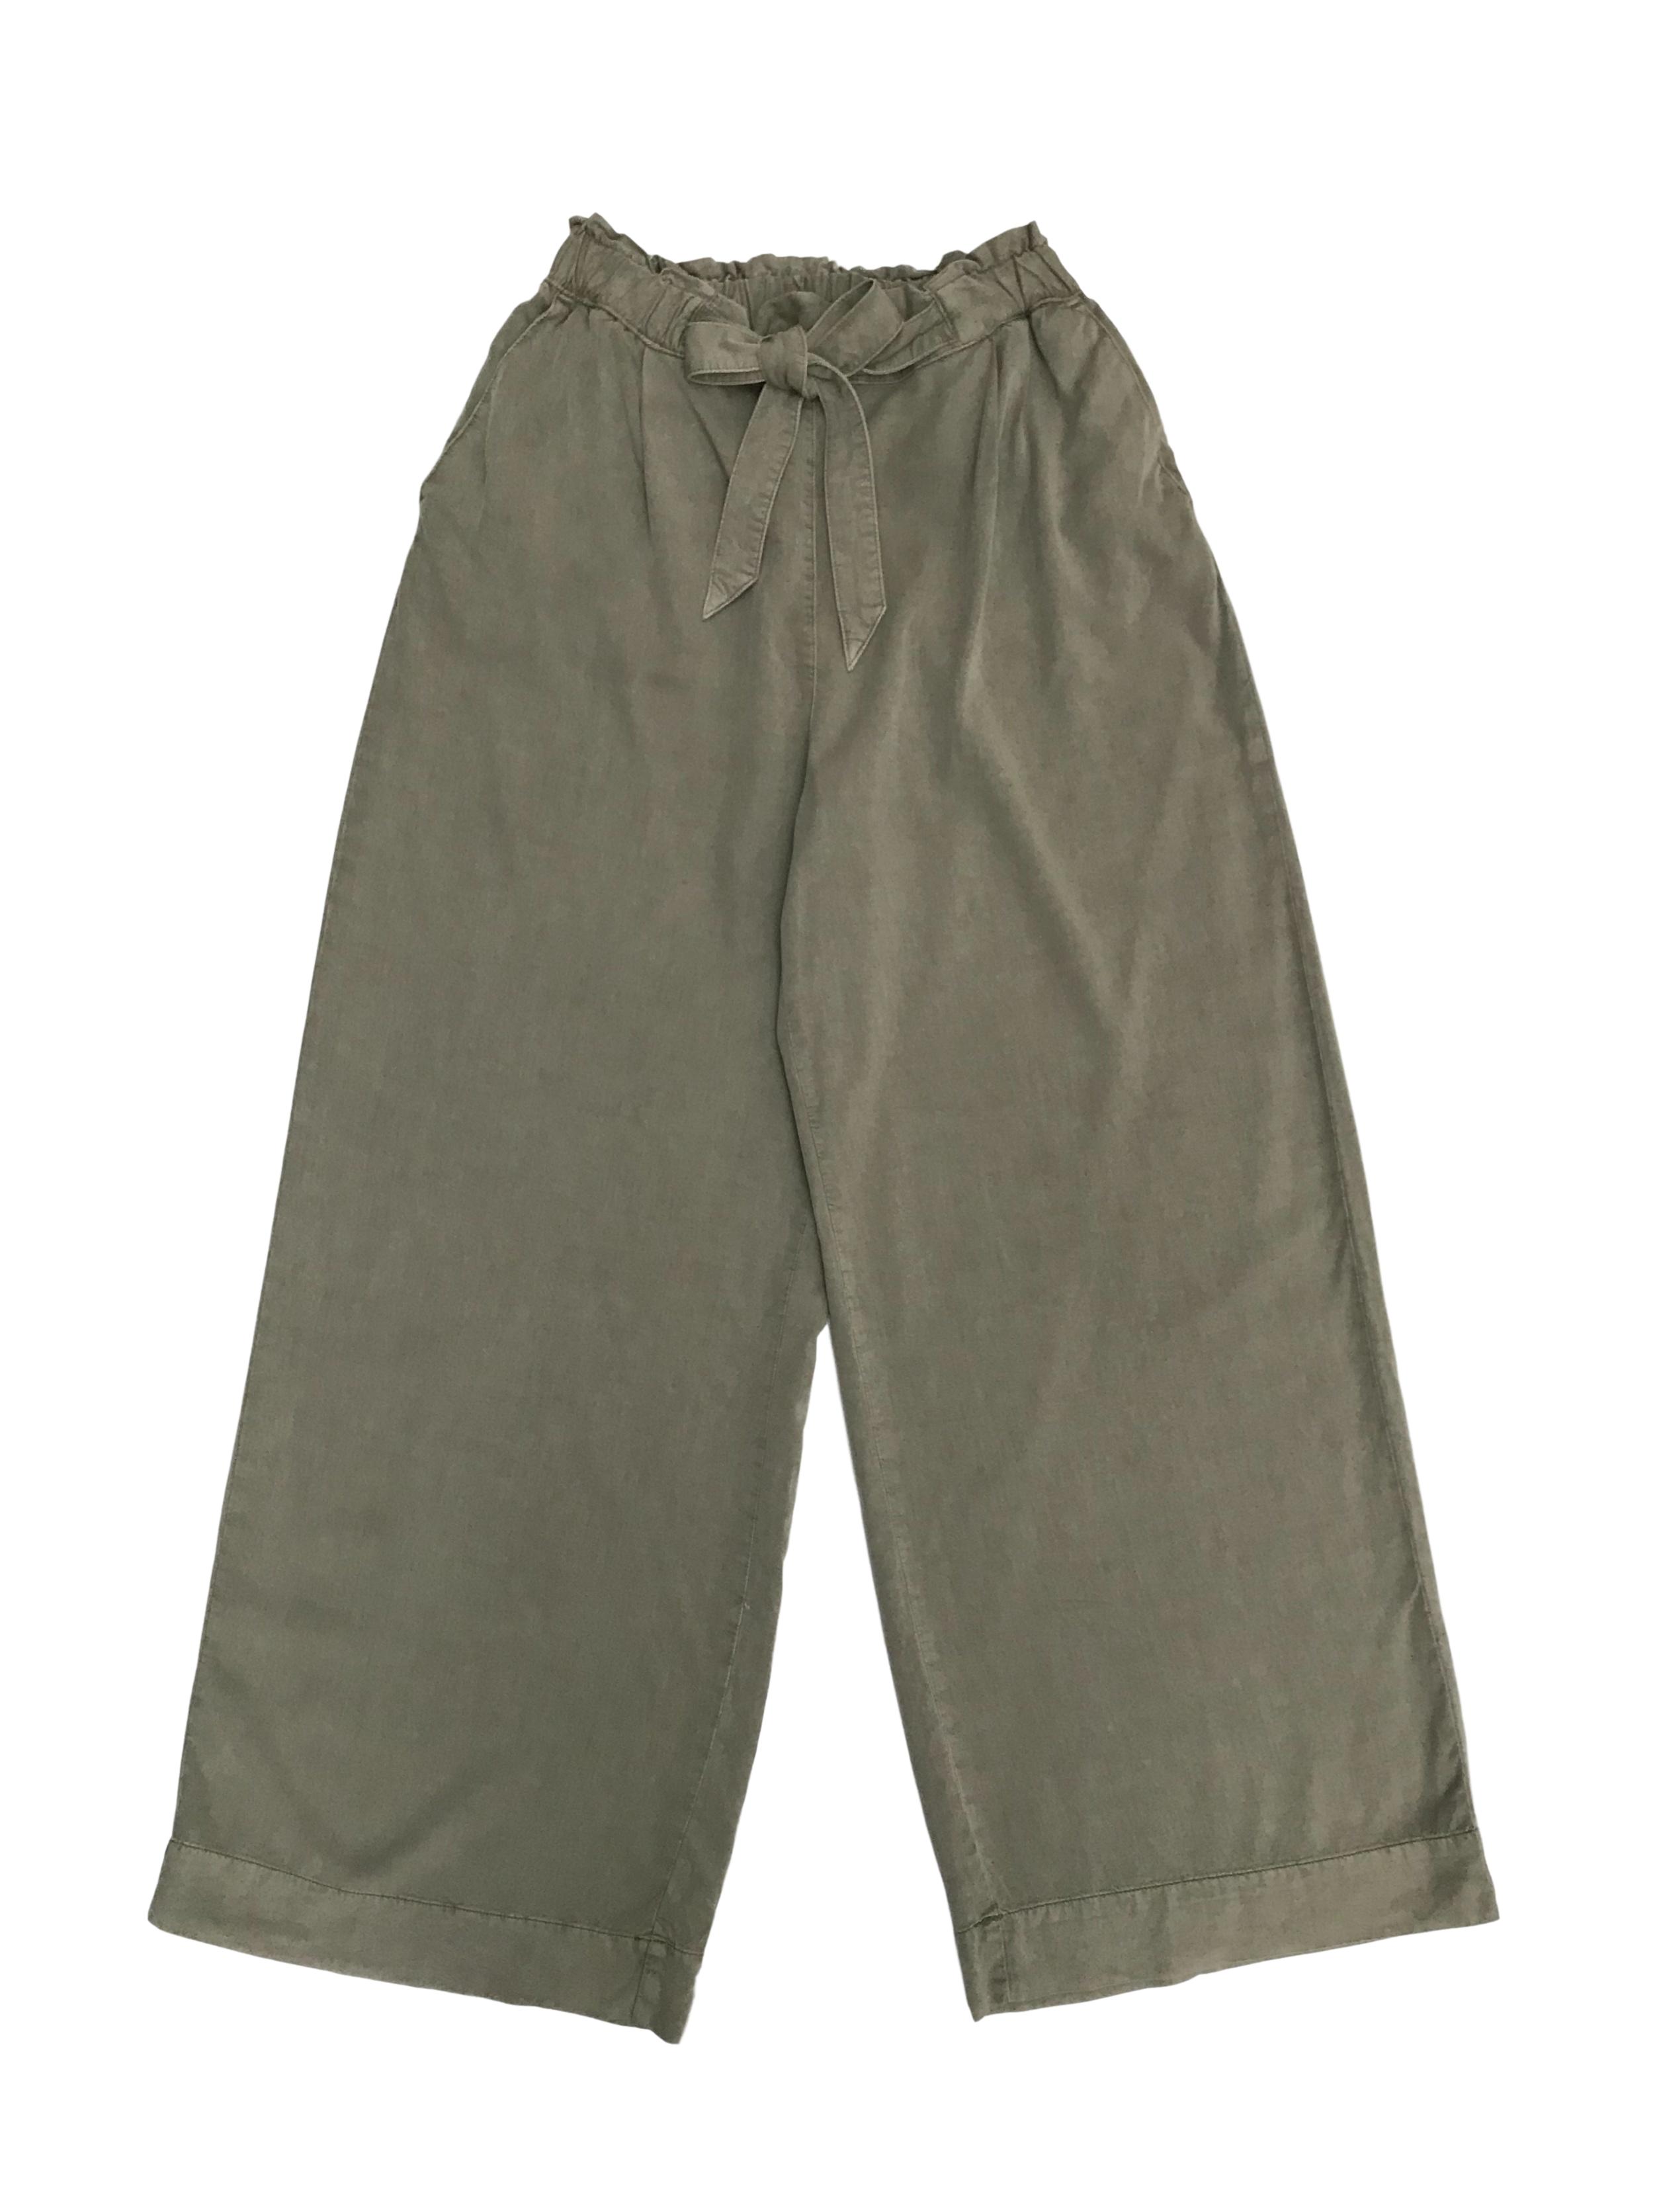 Pantalón palazzo H&M, cintura elástica con cinto y bolsillos laterales. Rico al tacto y con caída. Cintura 70cm (sin estirar). Precio original S/ 150